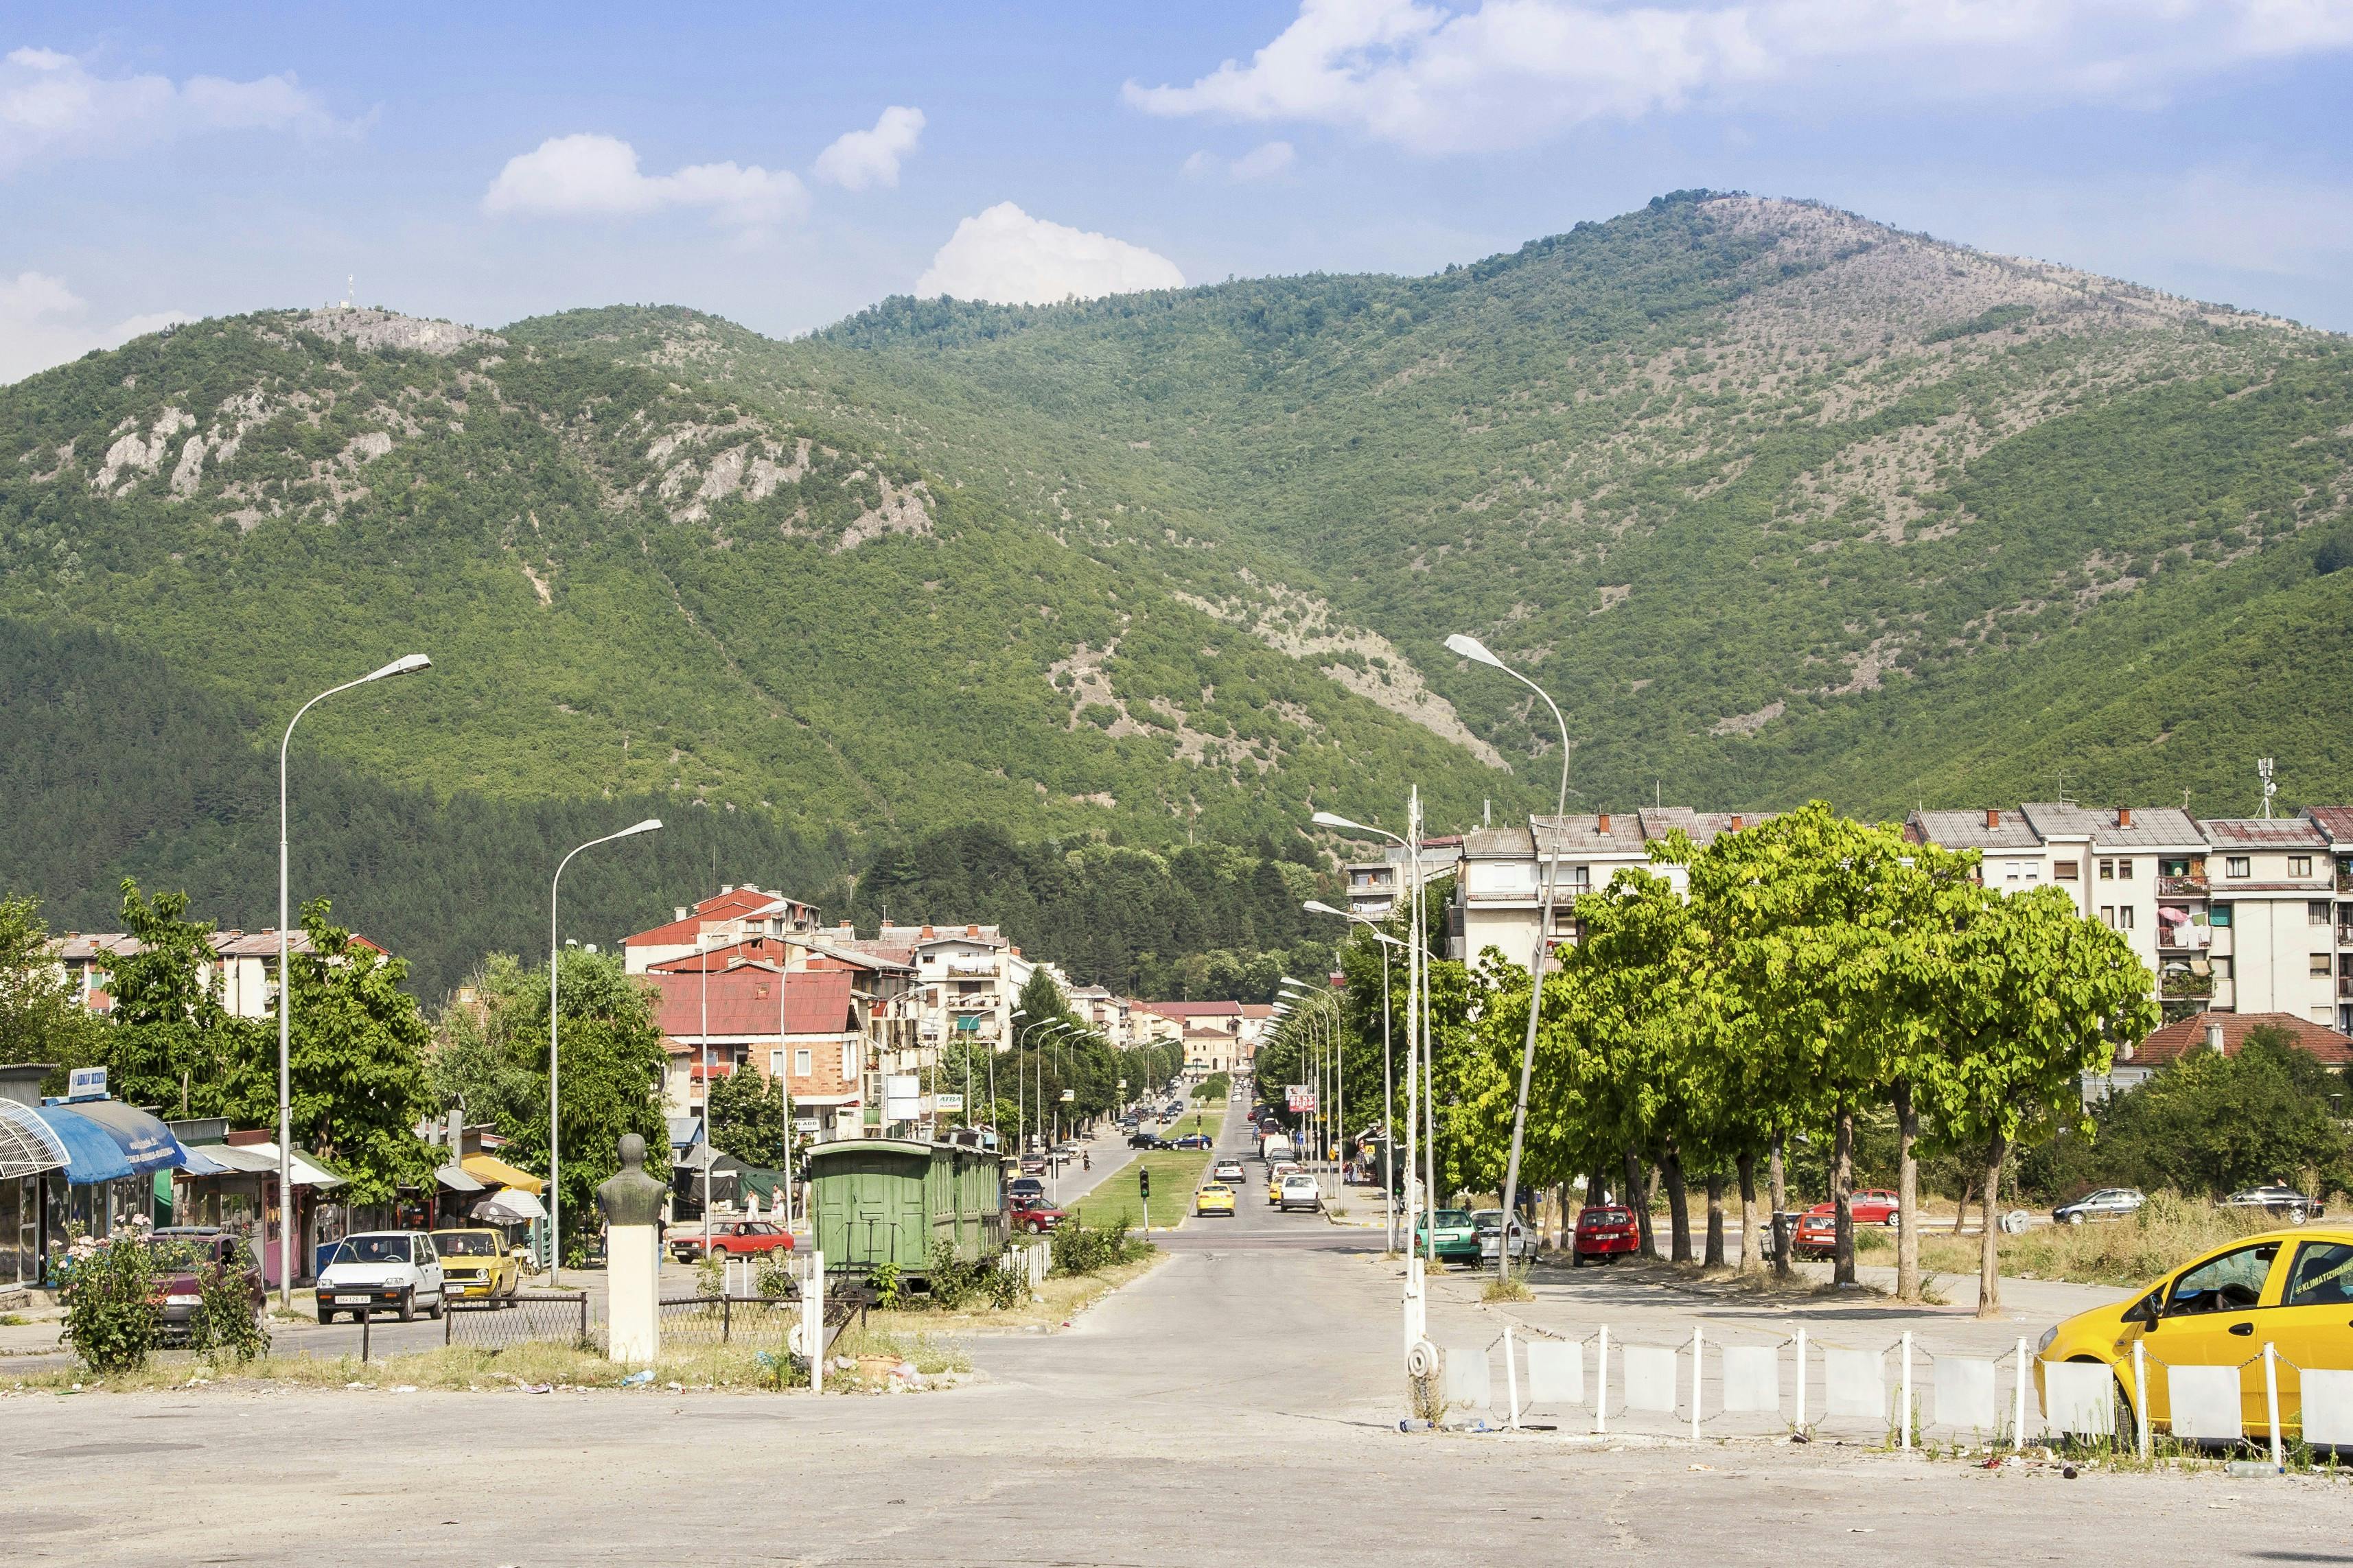 Kicevo er en by i den vestlige del af Nordmakedonien